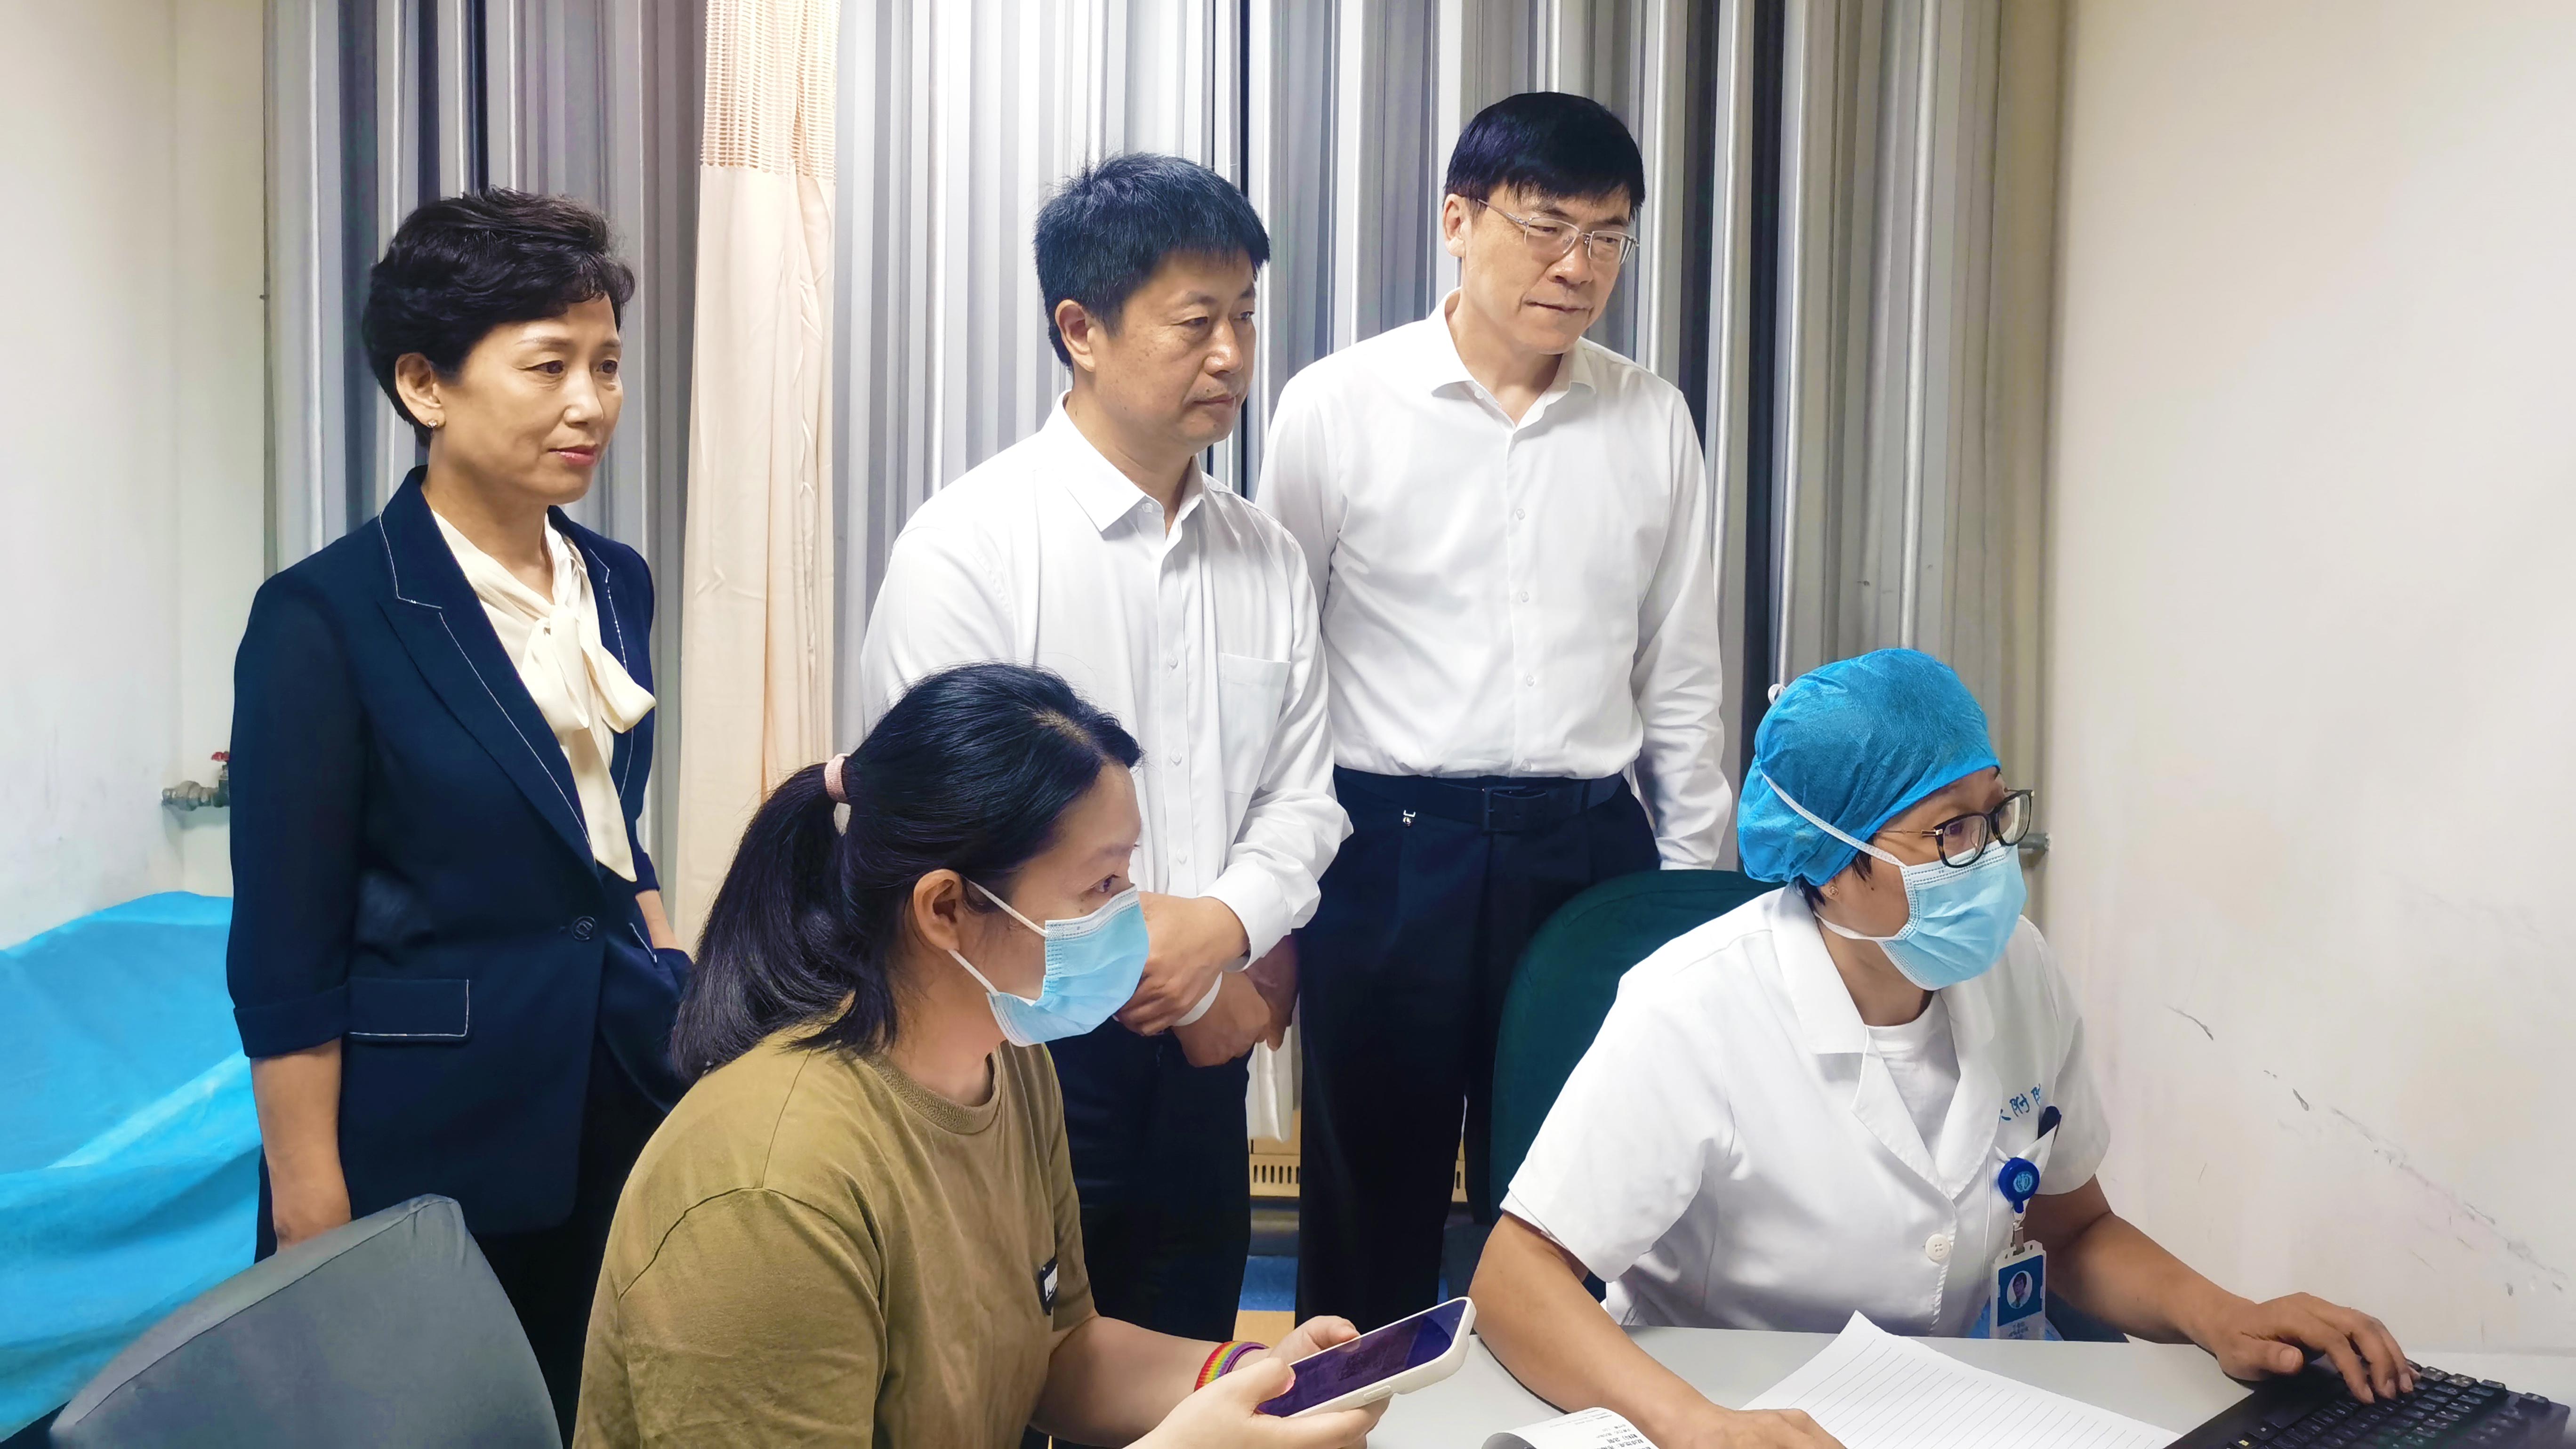 国家医保局党组成员、副局长黄华波来鲁调研医保信息化标准化工作